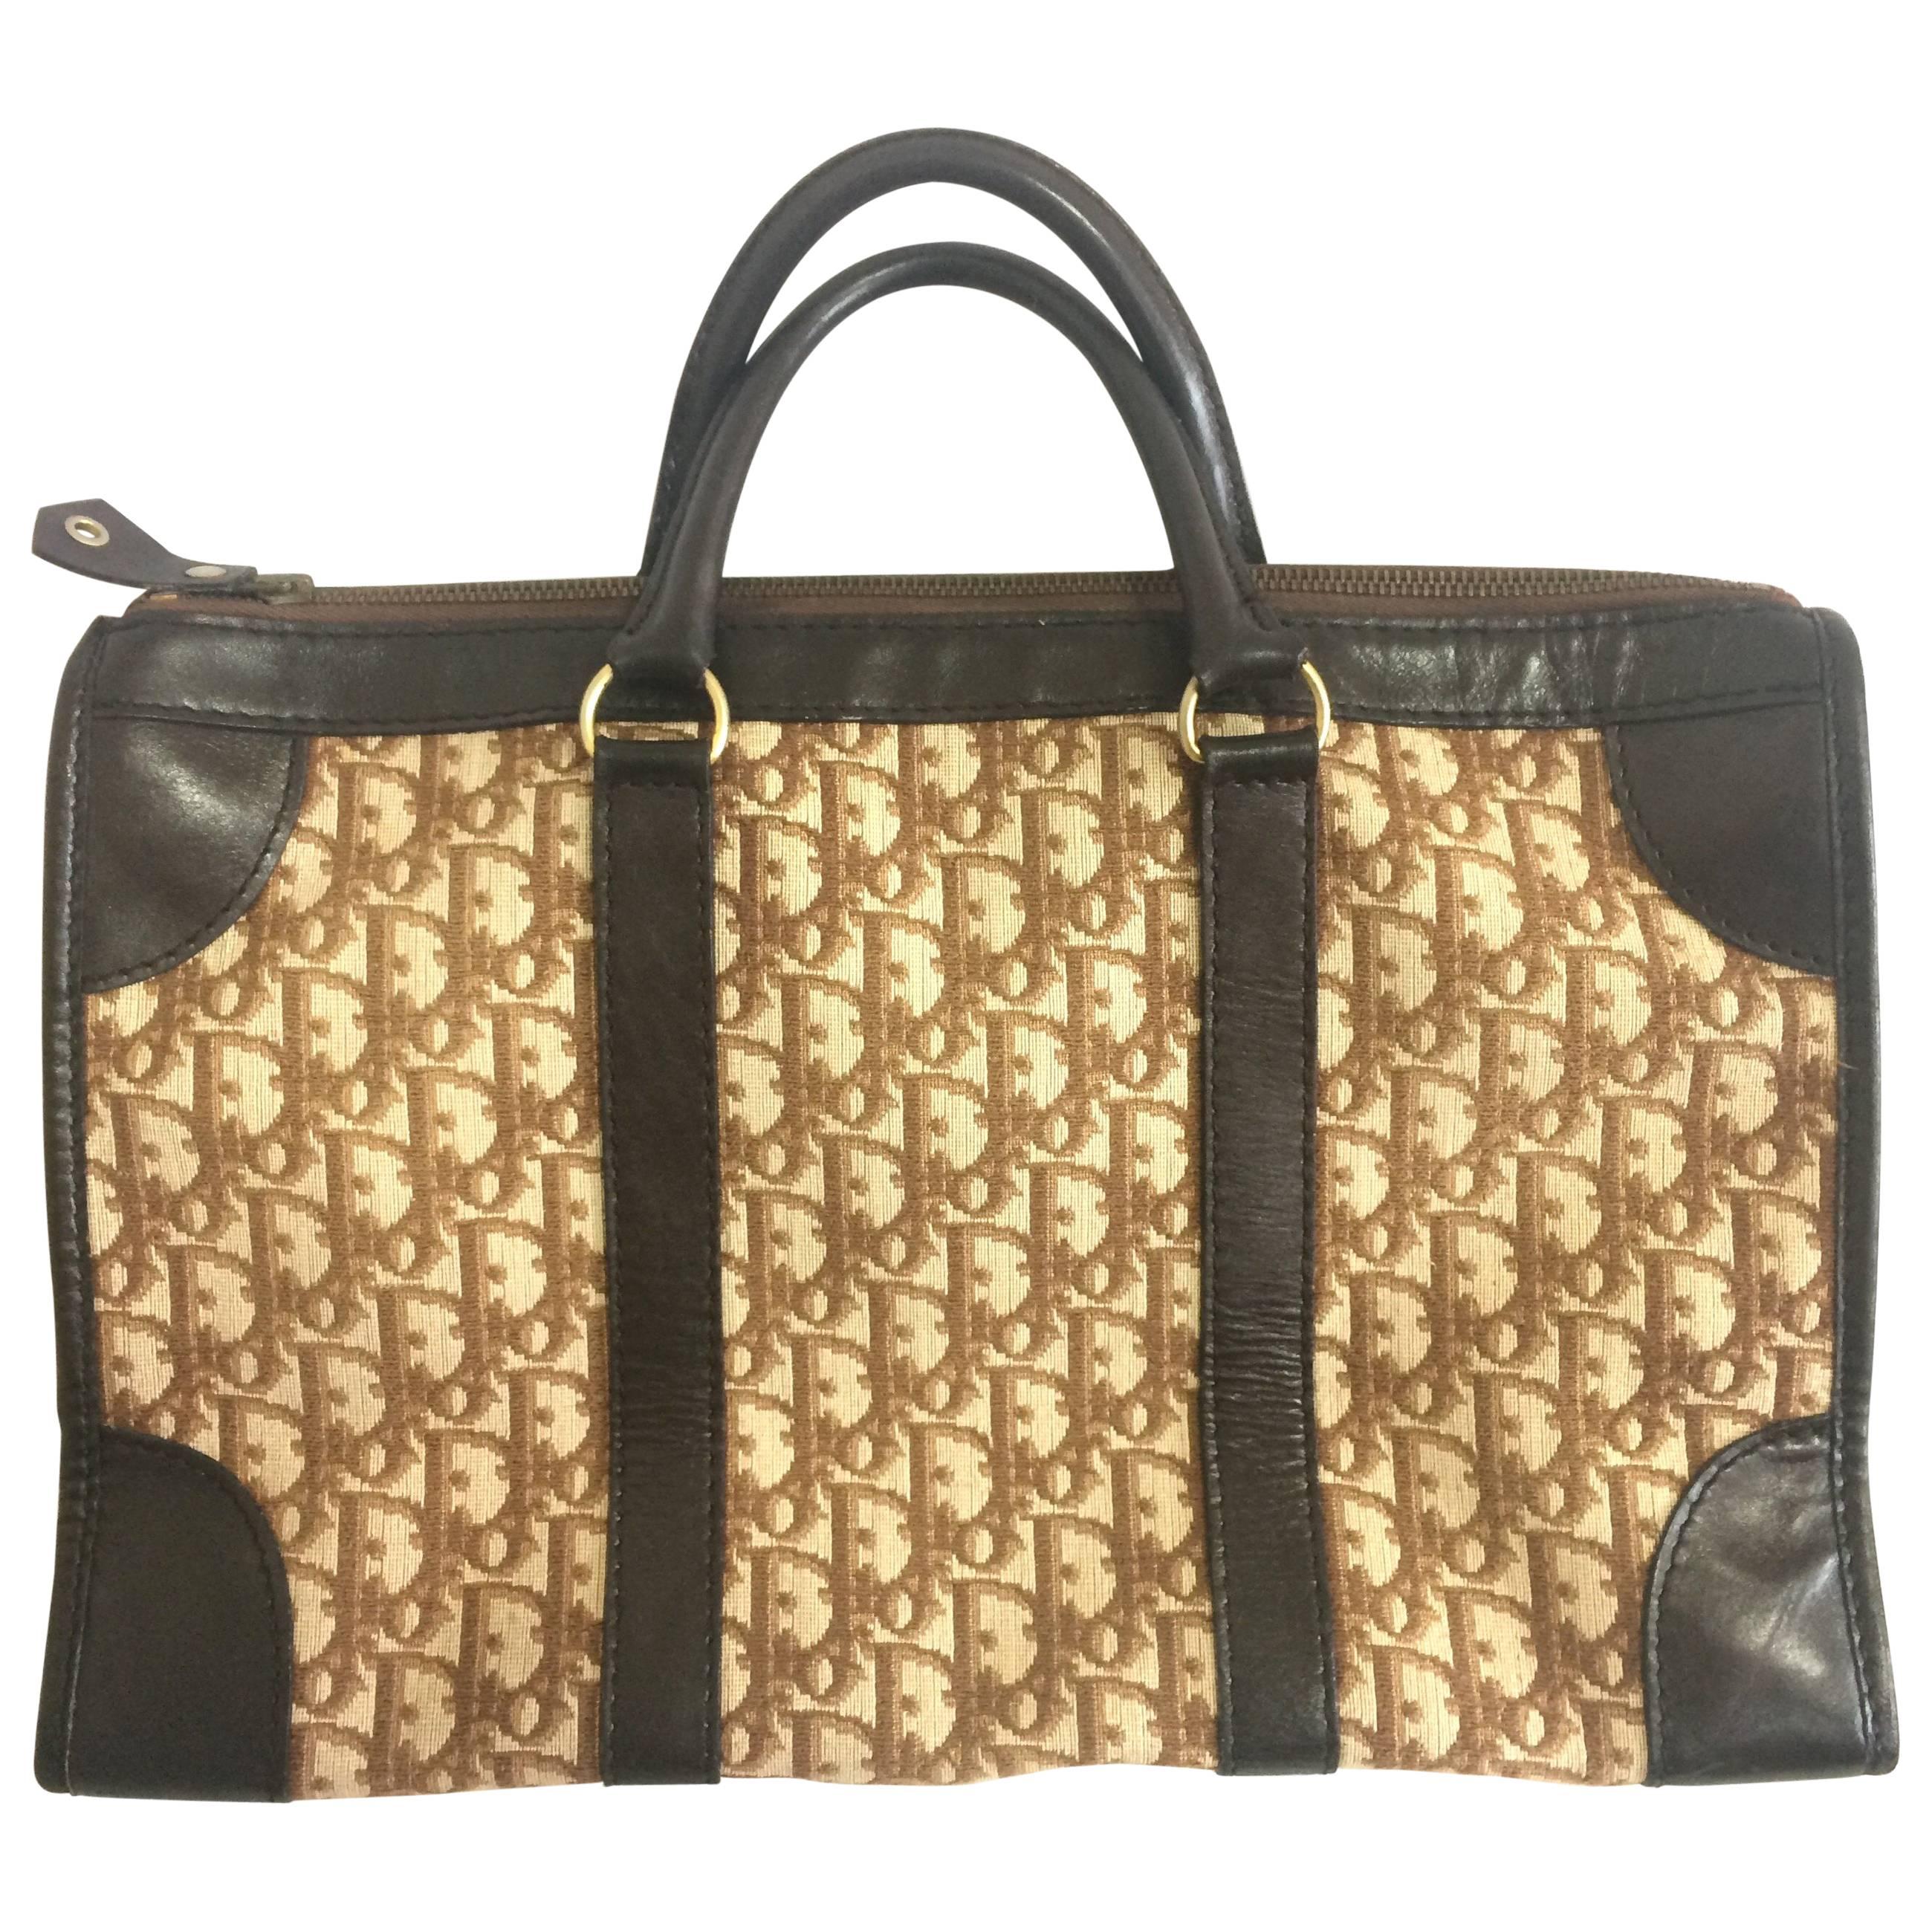 Vintage Christian Dior brown and beige trotter monogram bag, travel bag, unisex.